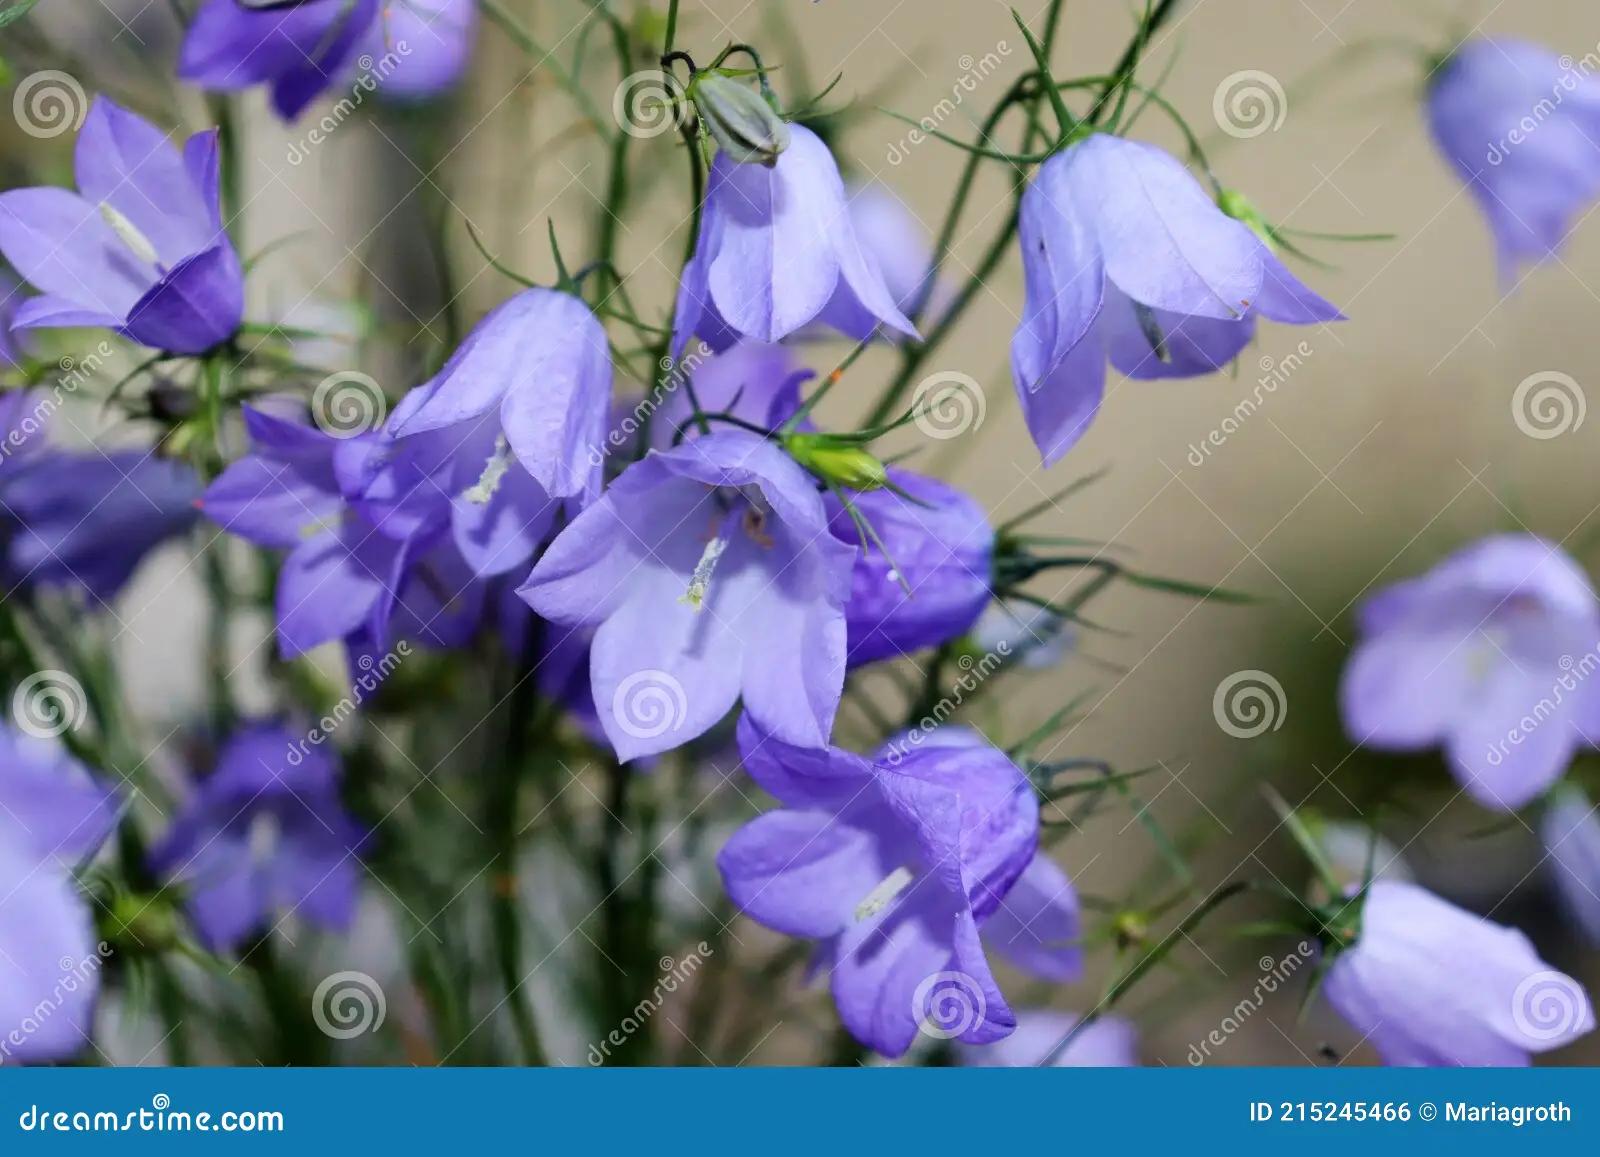 flor nacional de suecia - Cuál es la flor nacional de Noruega